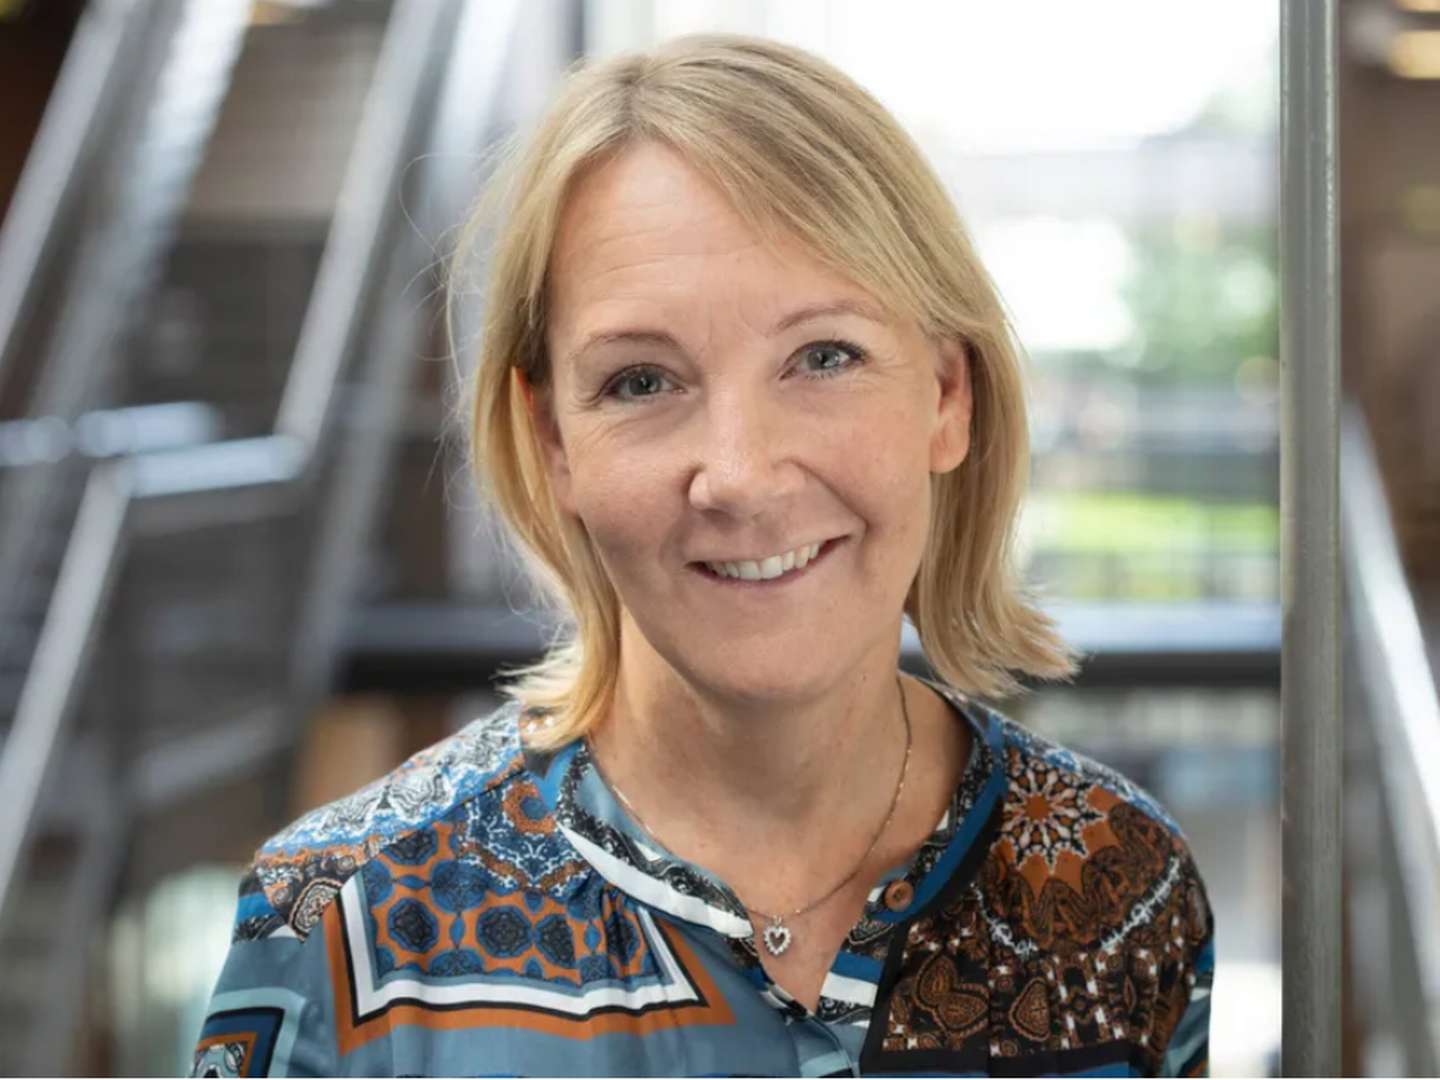 Louise Hørdum er koncerndirektør for HR og kommunikation i forsikringsselskabet, og hun har været med til at indføre sundhed som en central del af den måde, Topdanmark brander sig på over for nuværende og fremtidige medarbejdere. | Foto: Topdanmark